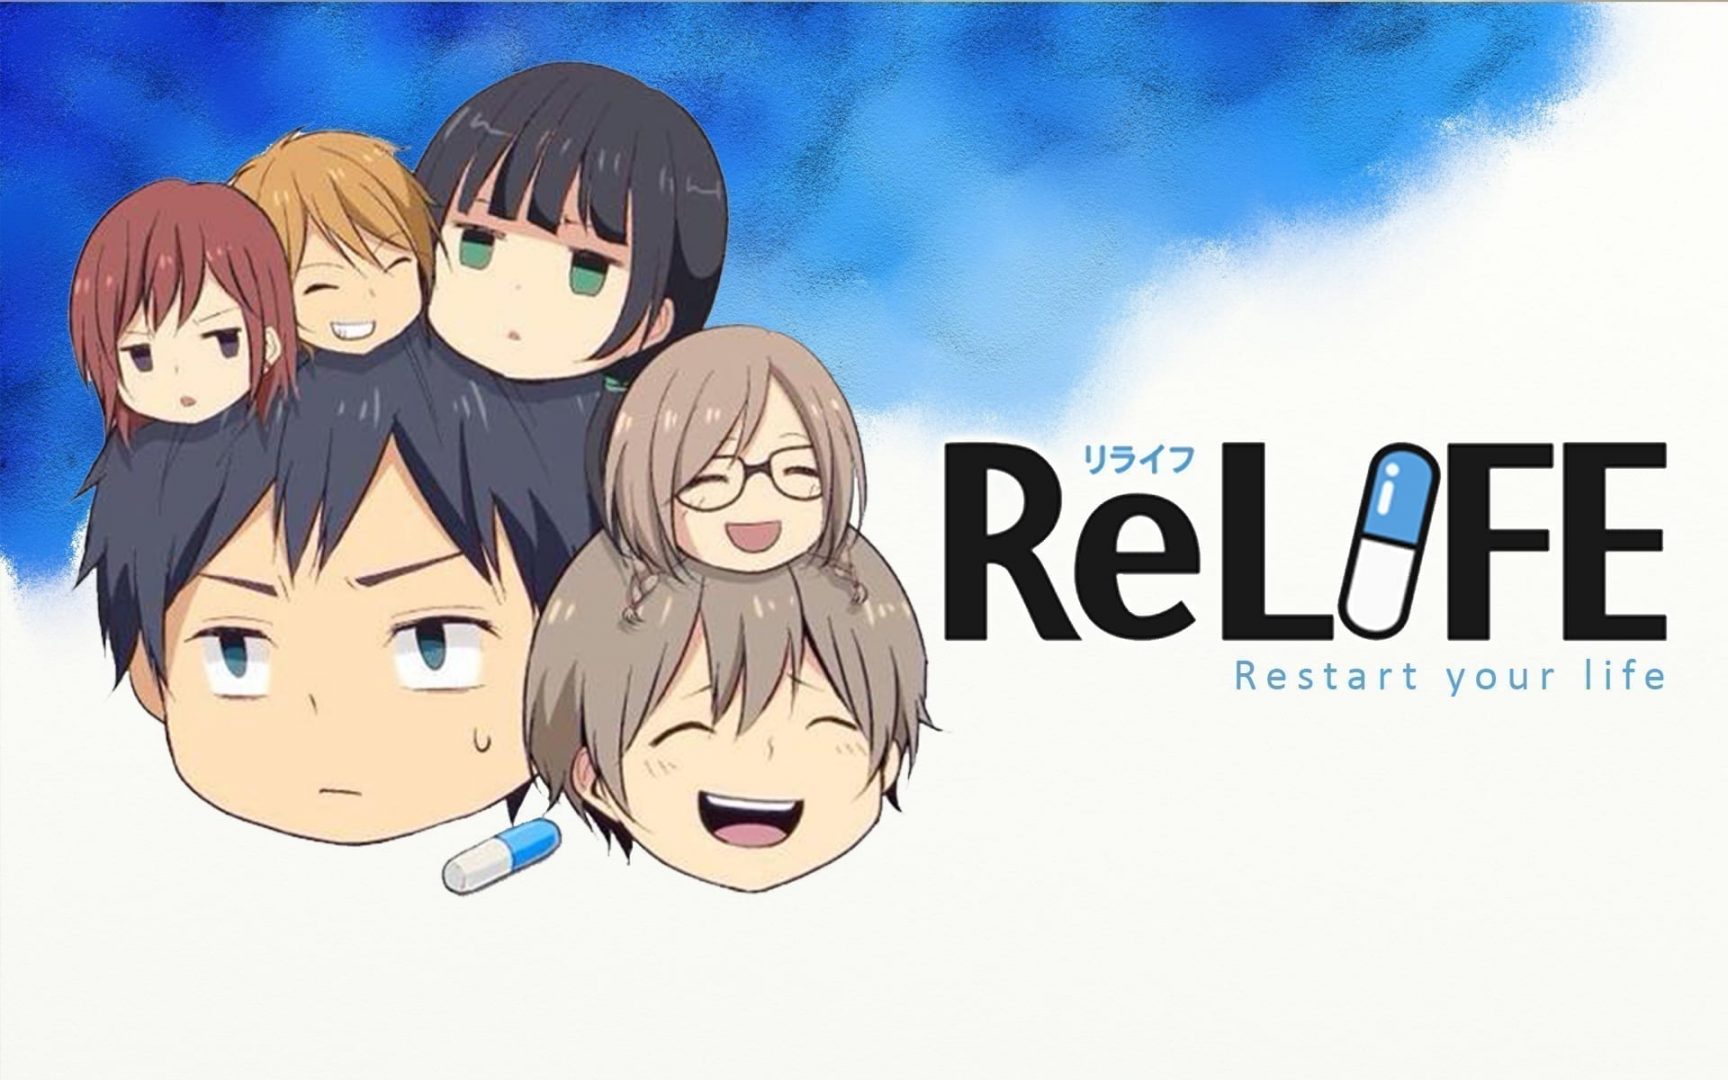 [Manga] ReLife, czyli program resocjalizacyjny w pigułce